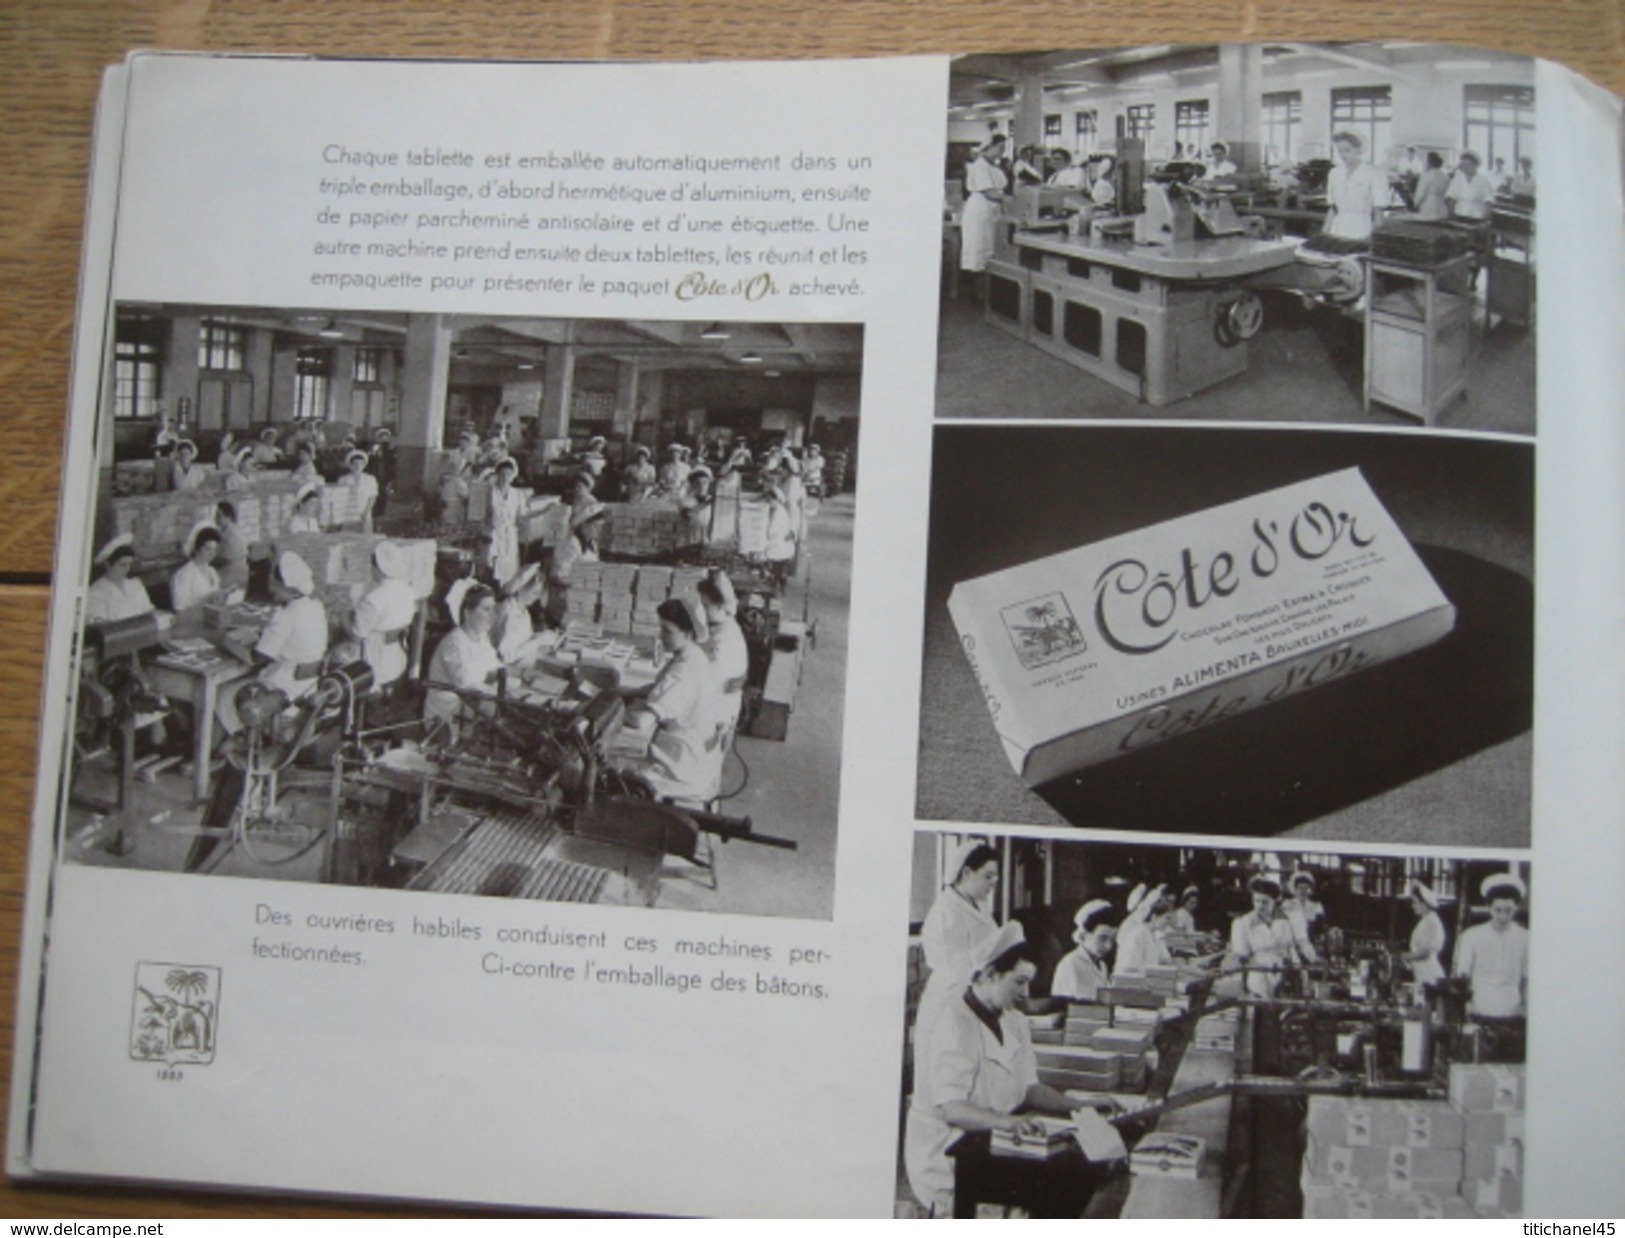 Catalogue publicitaire de 1960 LE BON CHOCOLAT COTE D'OR - Nombreuses photos sur la fabrication du chocolat - 40 pages